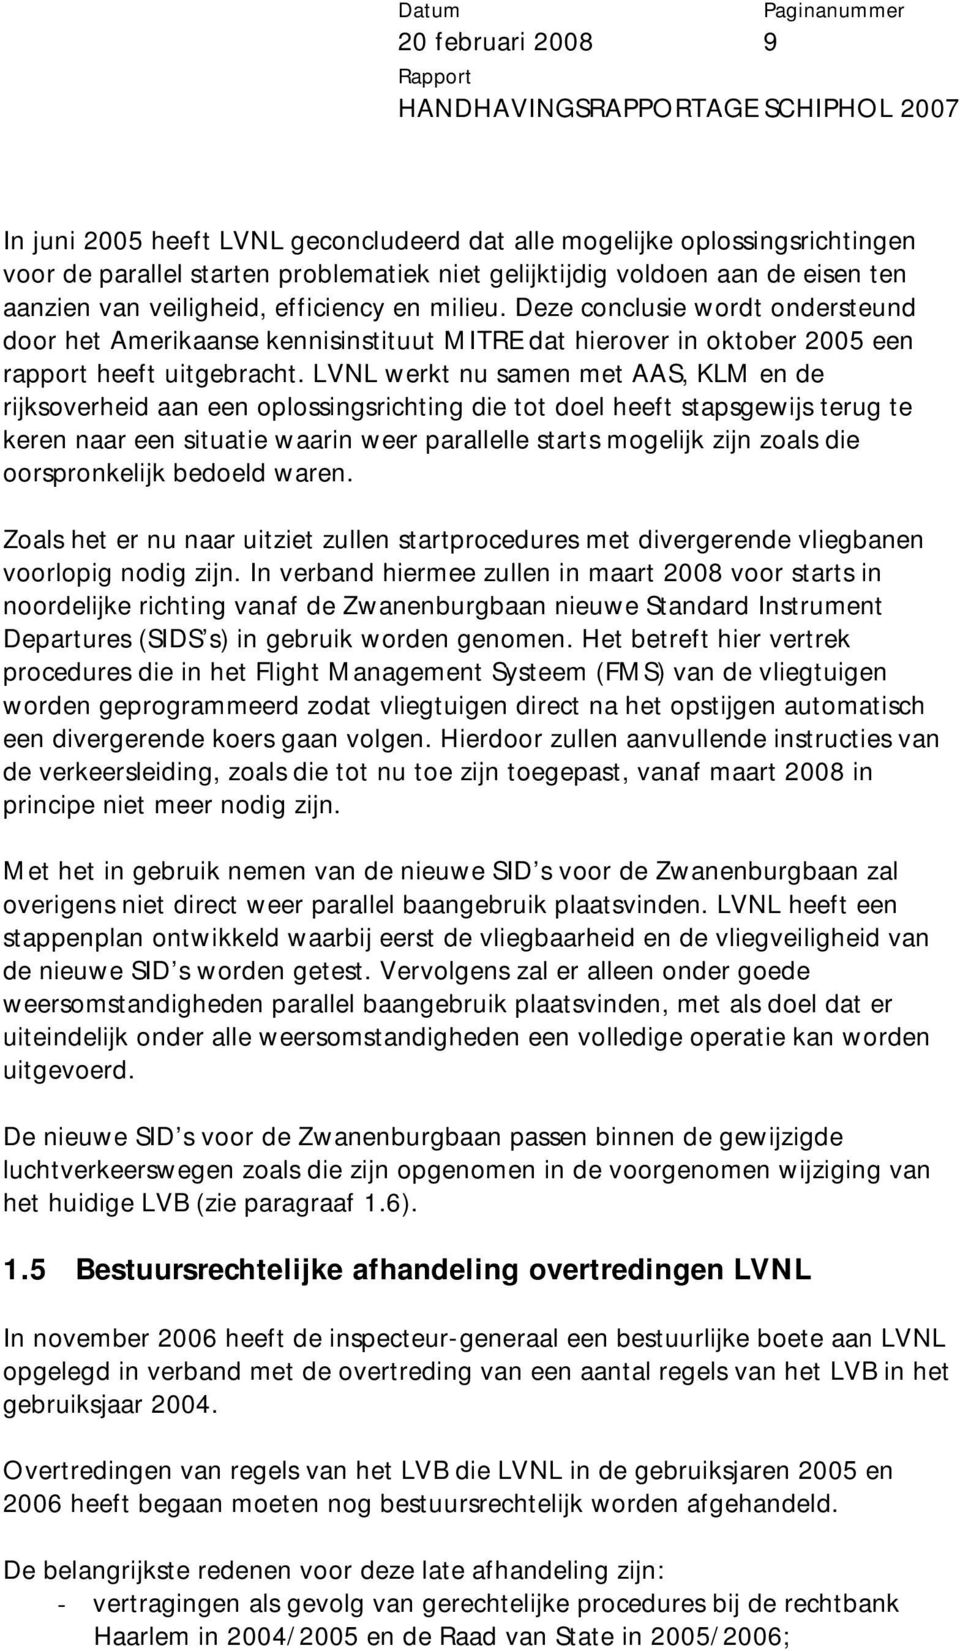 LVNL werkt nu samen met AAS, KLM en de rijksoverheid aan een oplossingsrichting die tot doel heeft stapsgewijs terug te keren naar een situatie waarin weer parallelle starts mogelijk zijn zoals die